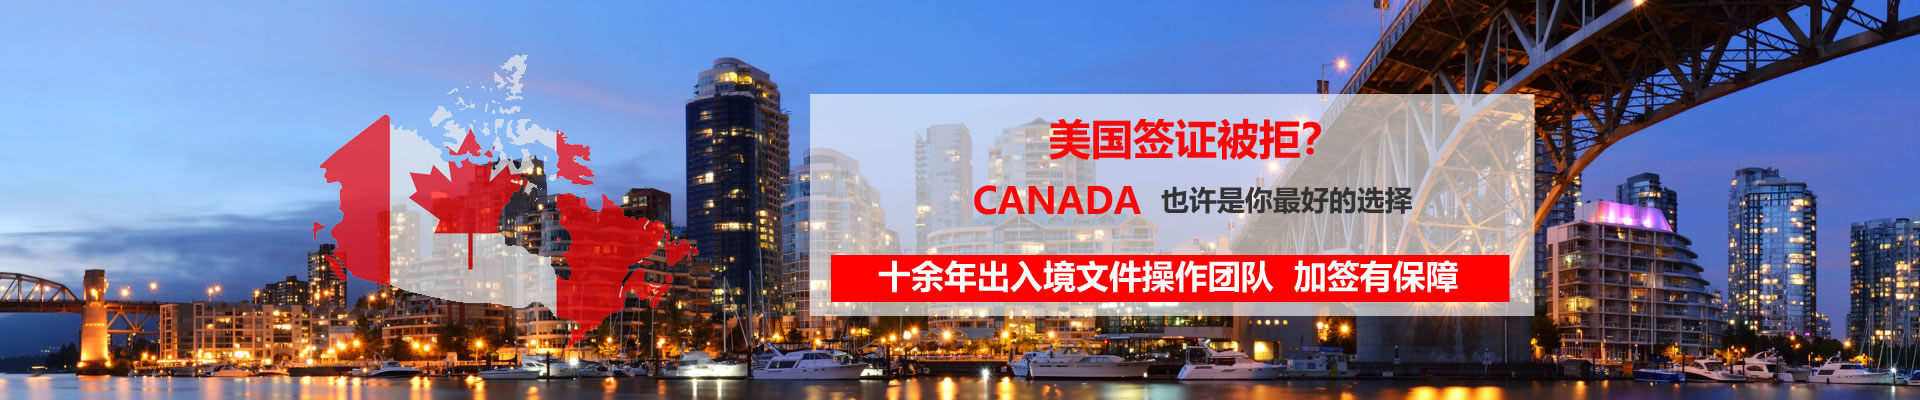 加拿大签证通关保障